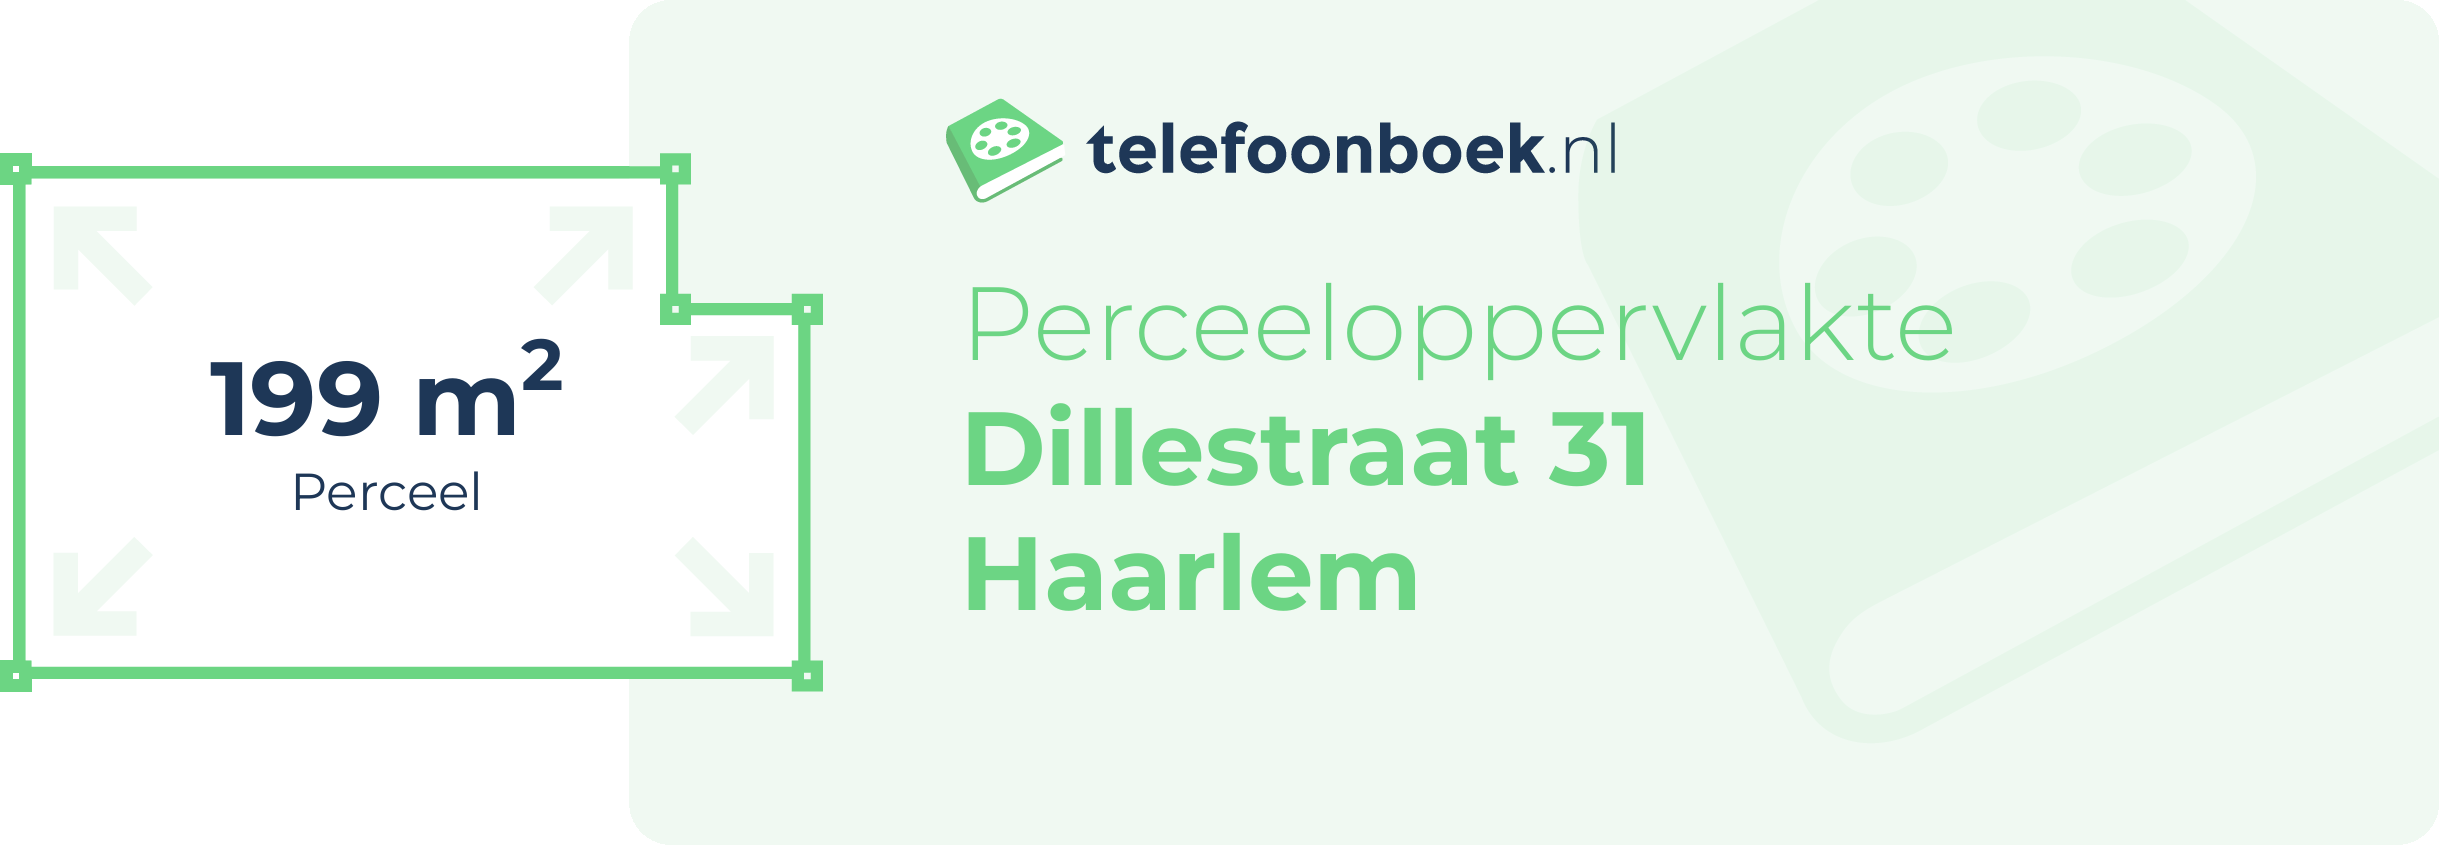 Perceeloppervlakte Dillestraat 31 Haarlem